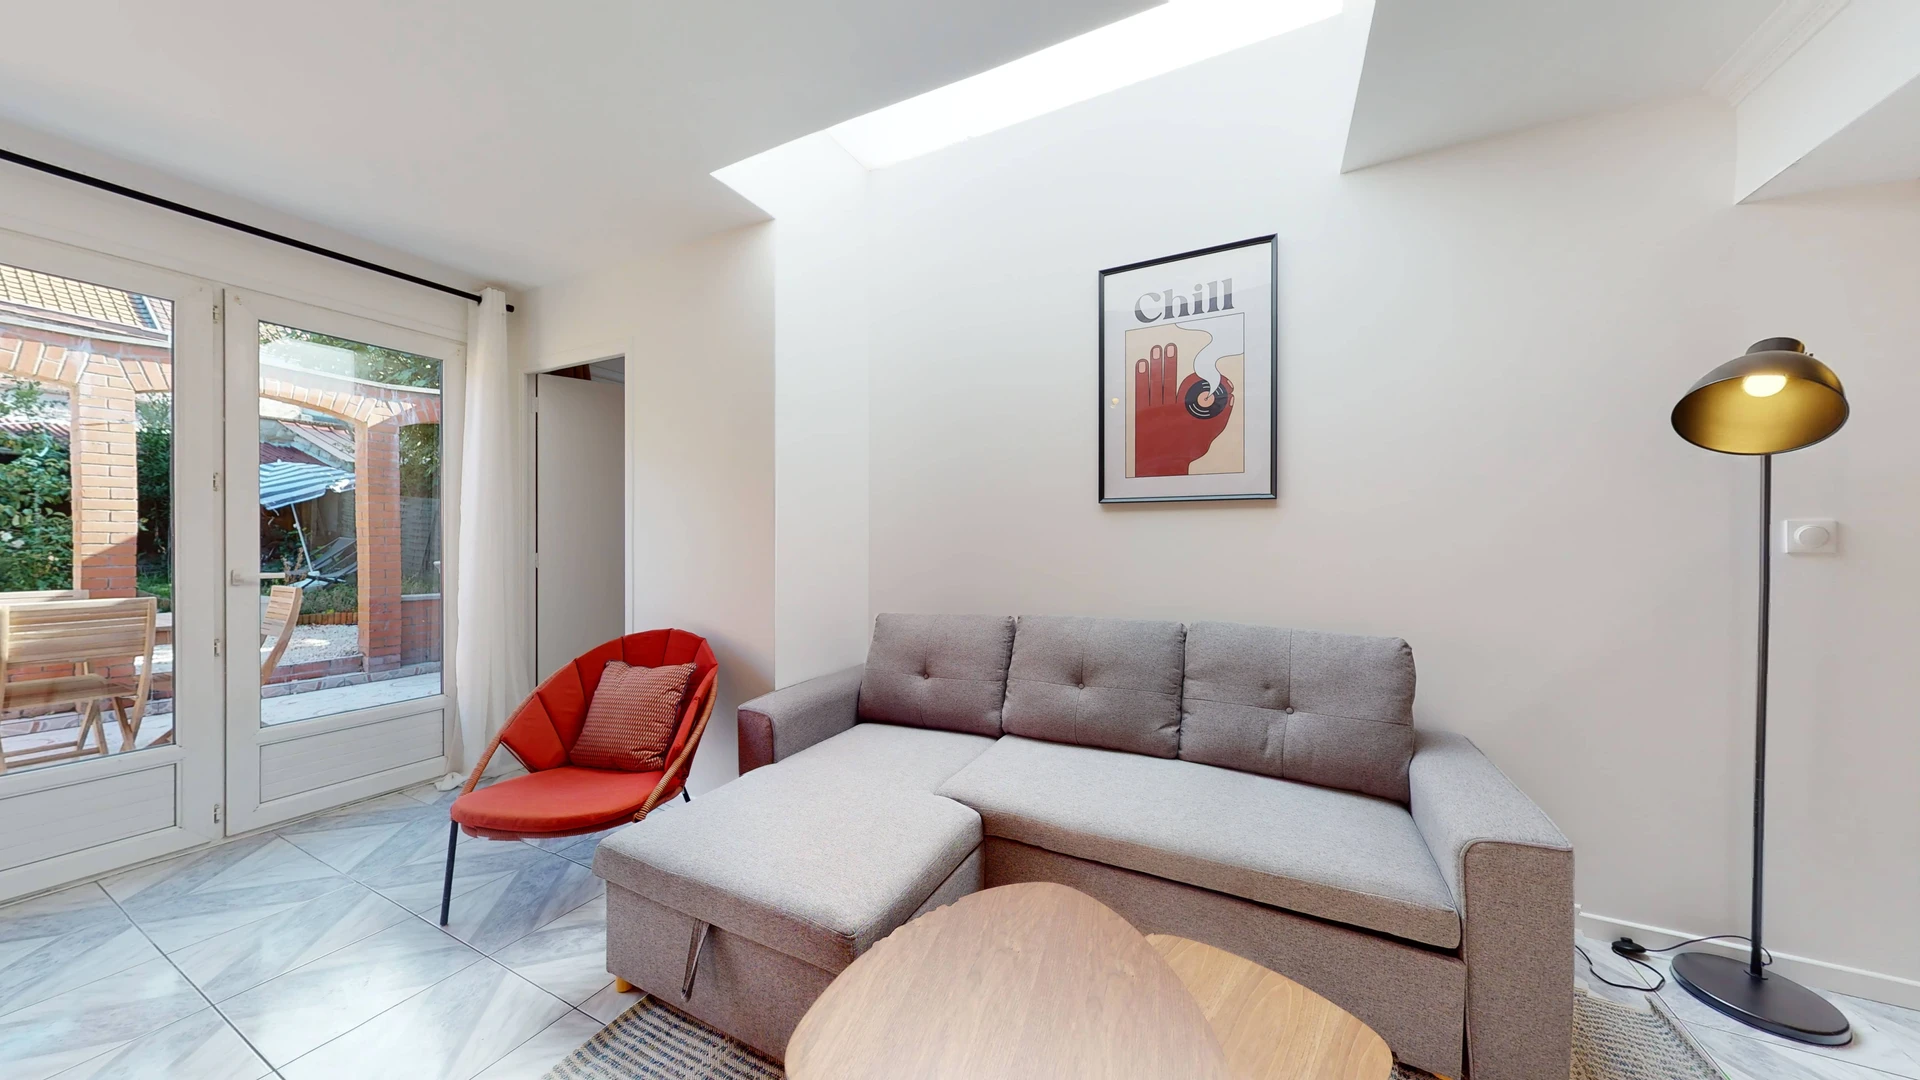 Chambre à louer dans un appartement en colocation à Lille